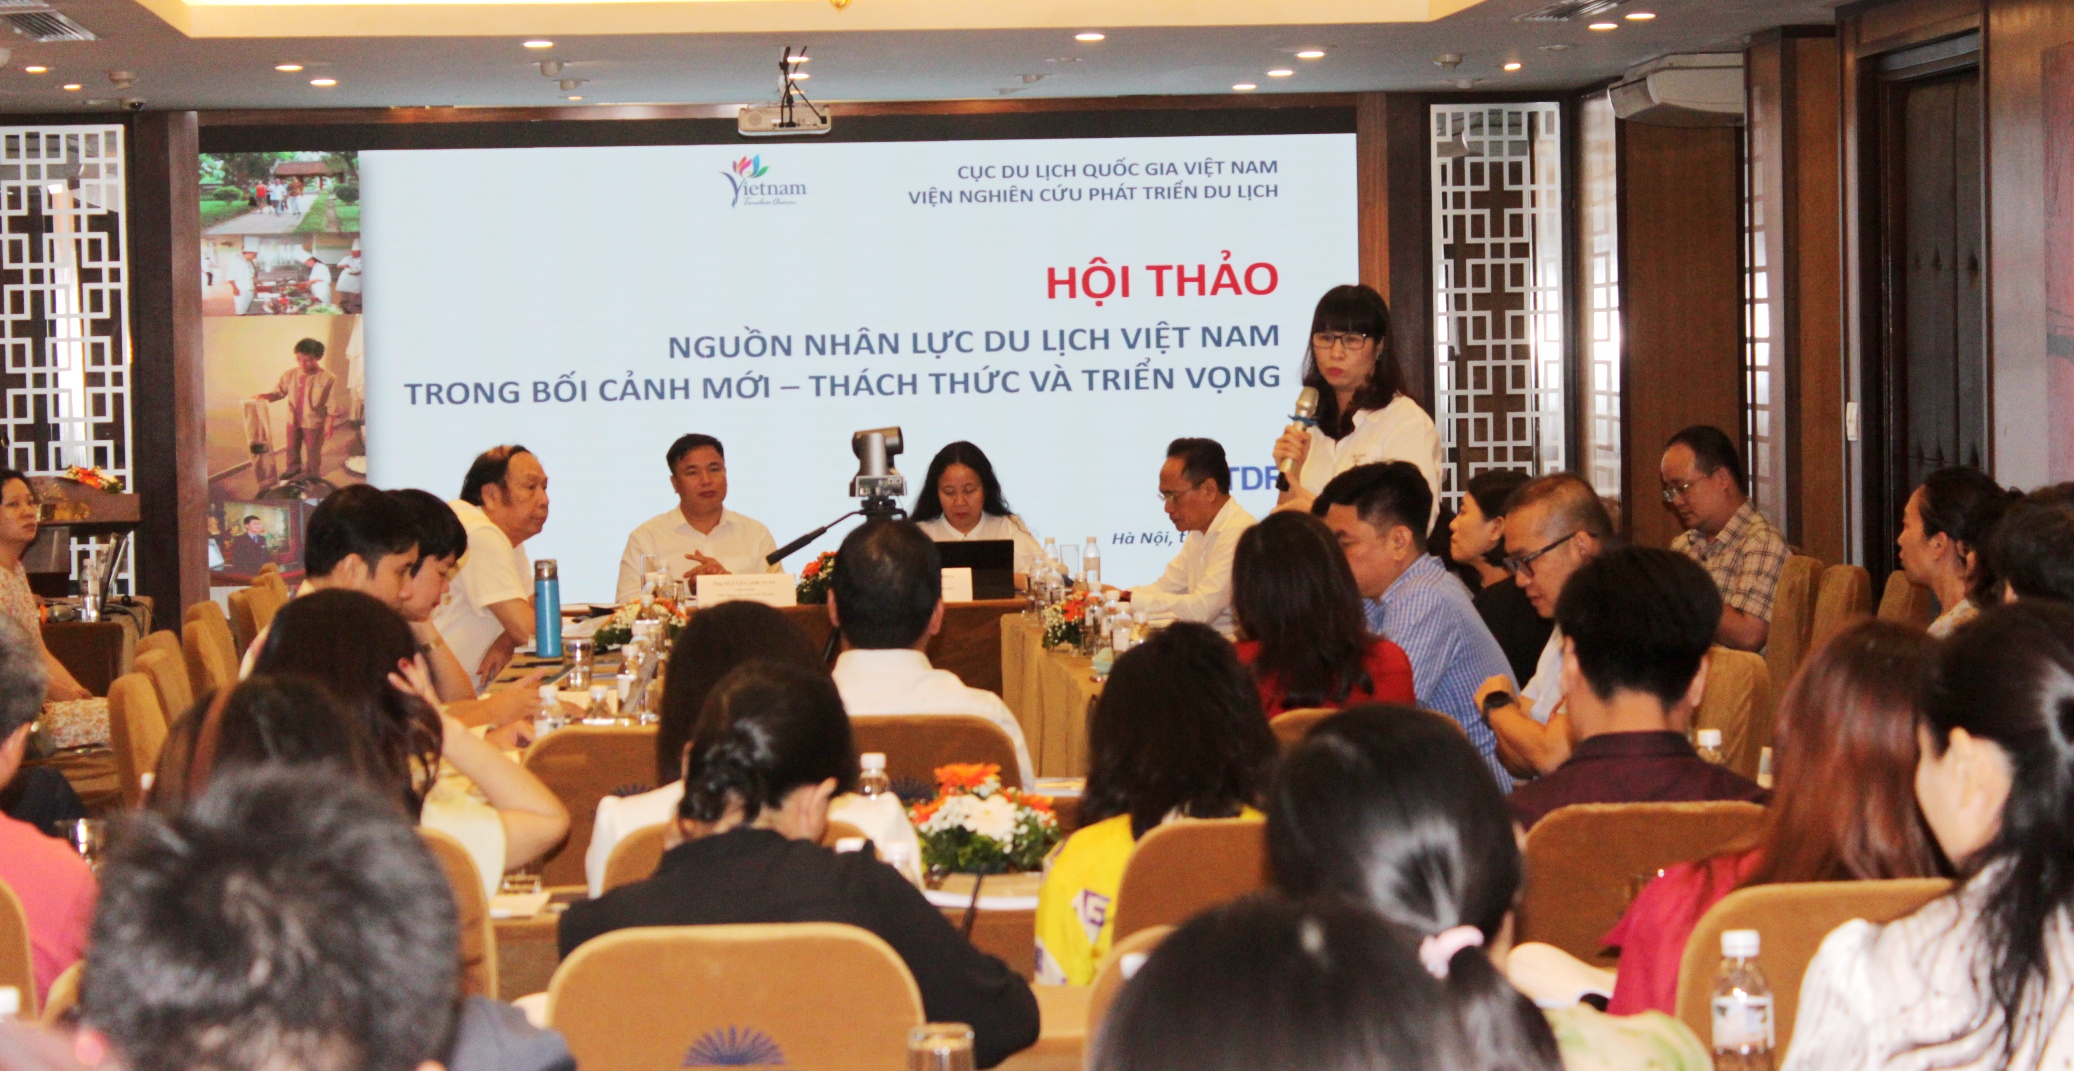 Hội thảo “Nguồn nhân lực du lịch Việt Nam trong bối cảnh mới - Thách thức và triển vọng”